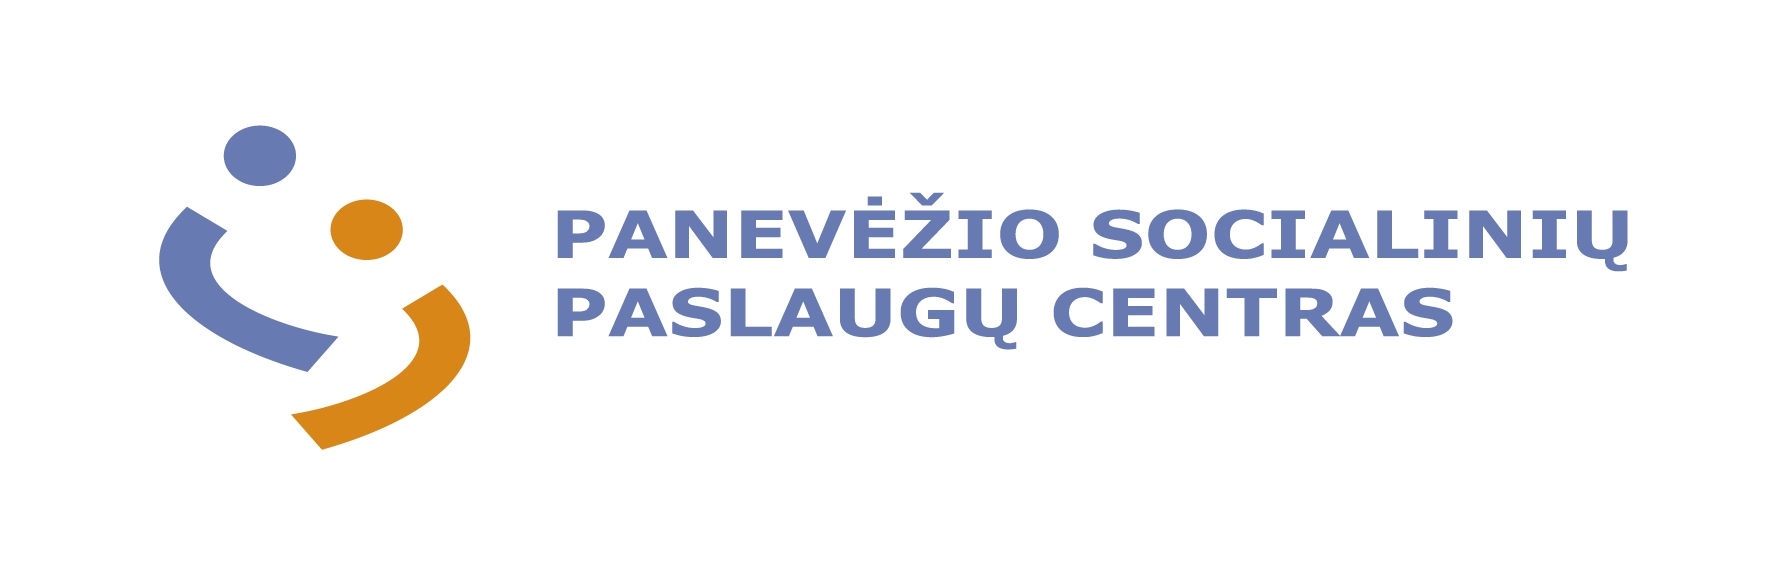 Panevėžio socialininių paslaugų centro logotipas